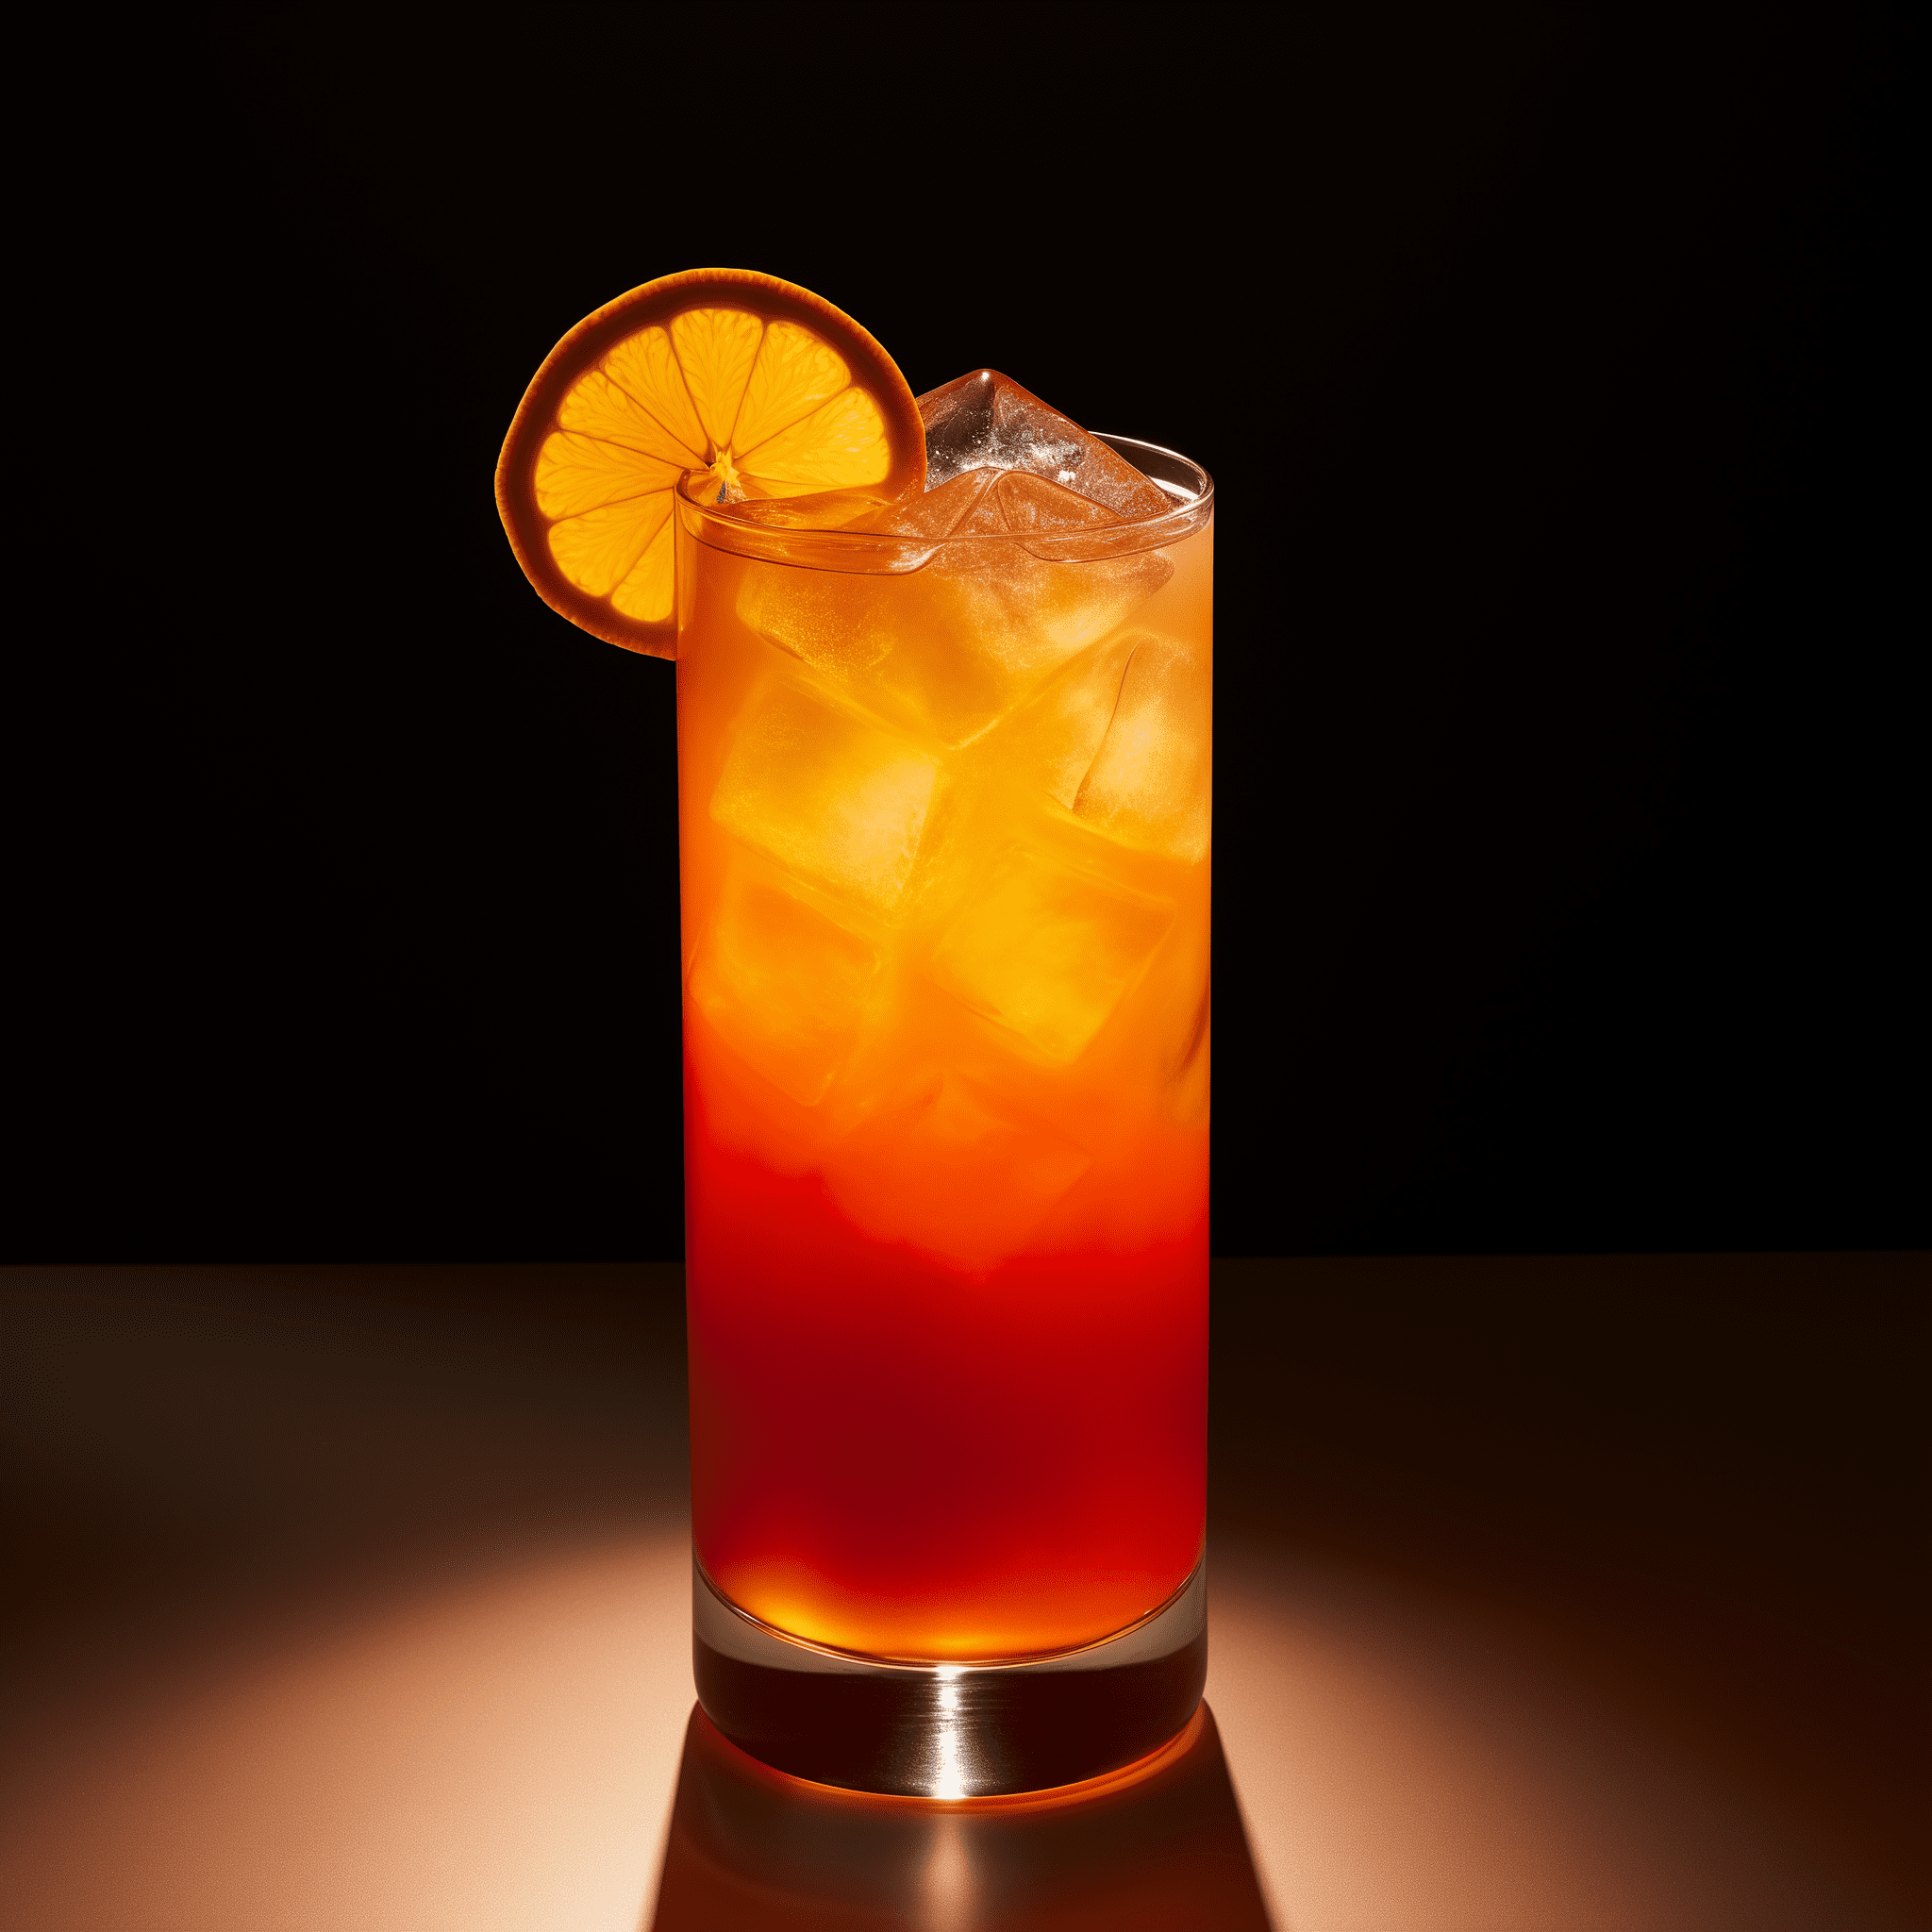 Wild Screw Cóctel Receta - El Wild Screw ofrece un perfil de sabor audaz con el calor del bourbon, la dulzura del mango y el toque cítrico del jugo de naranja. Es una mezcla armoniosa que es refrescante y afirmativa.